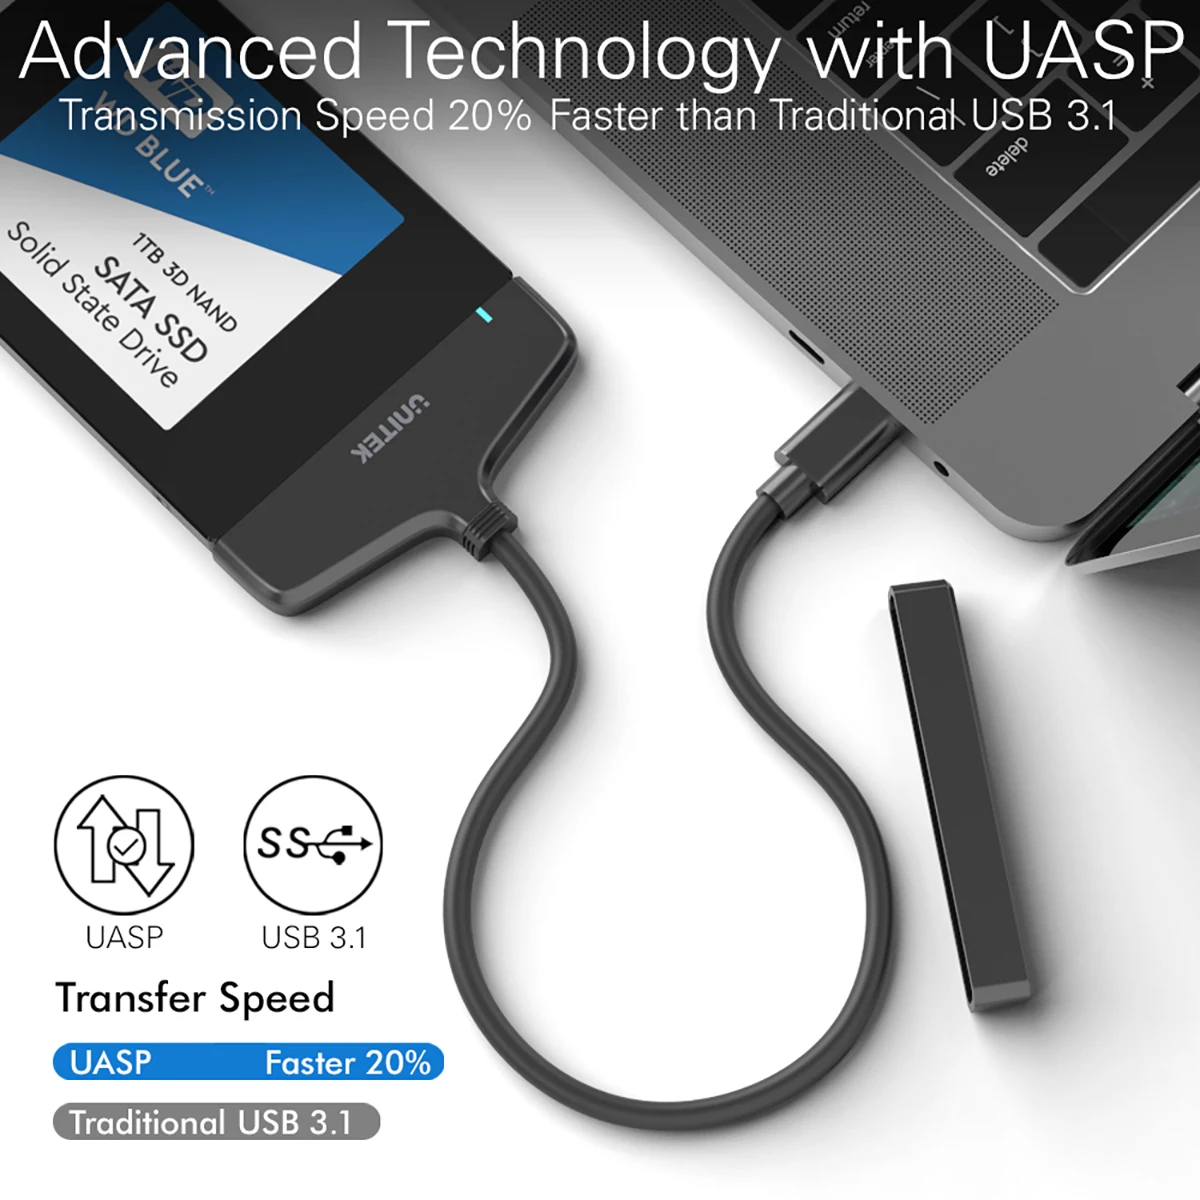 Adaptateur Convertisseur USB 3.1 type C vers SATA pour disque dur